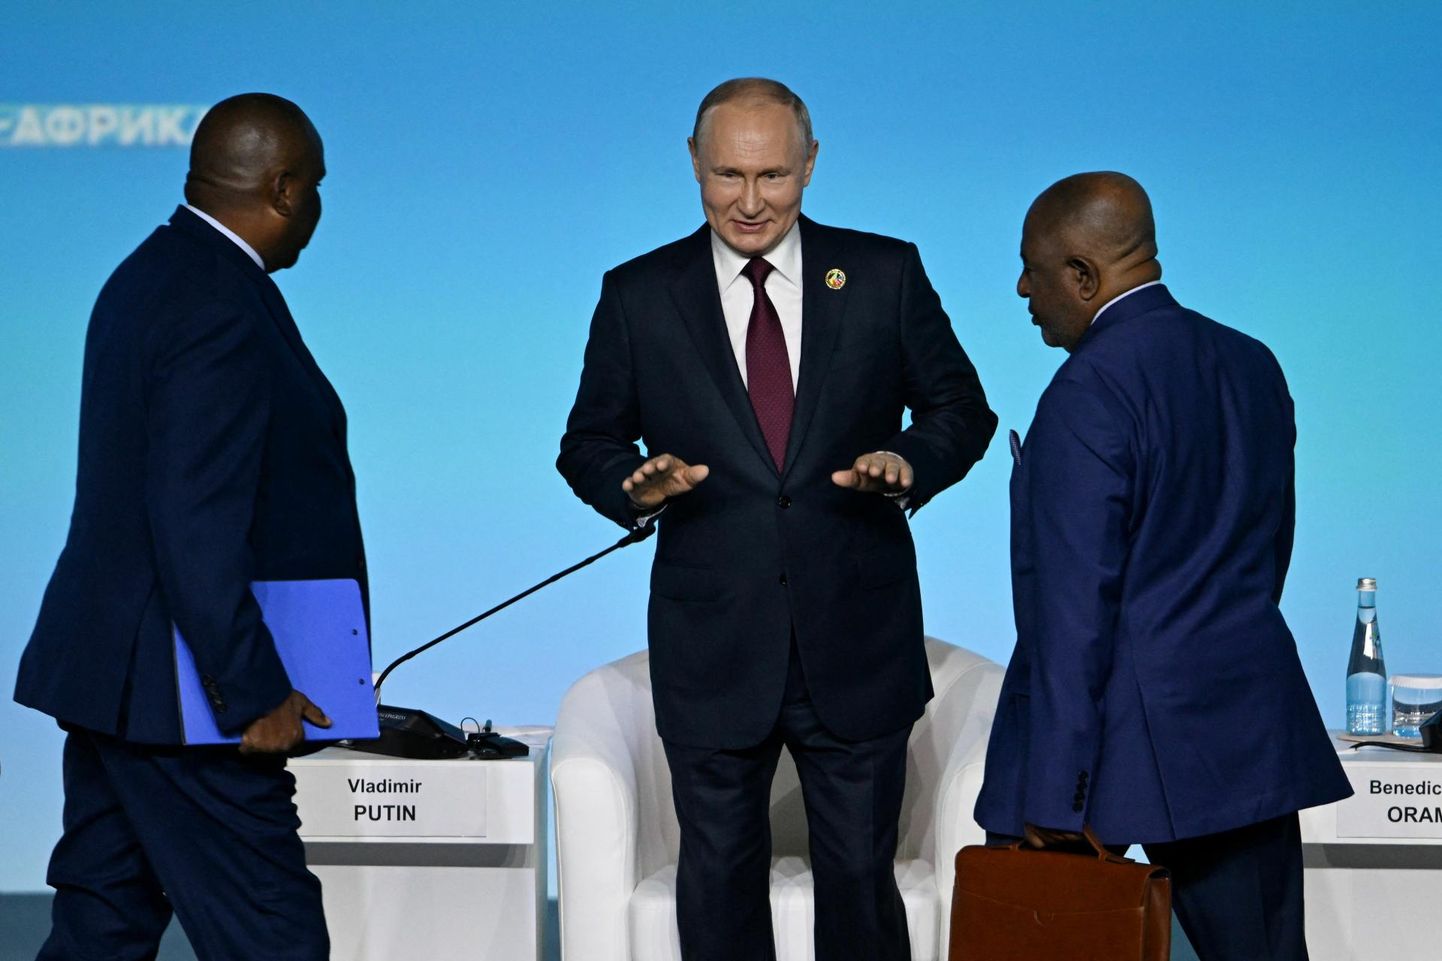 Venemaa riigipea Vladimir Putin eile Aafrika tippkohtumise avapäeval Peterburis. FOTO: Pavel Bednjakov/Sputnik/Reuters/Scanpix